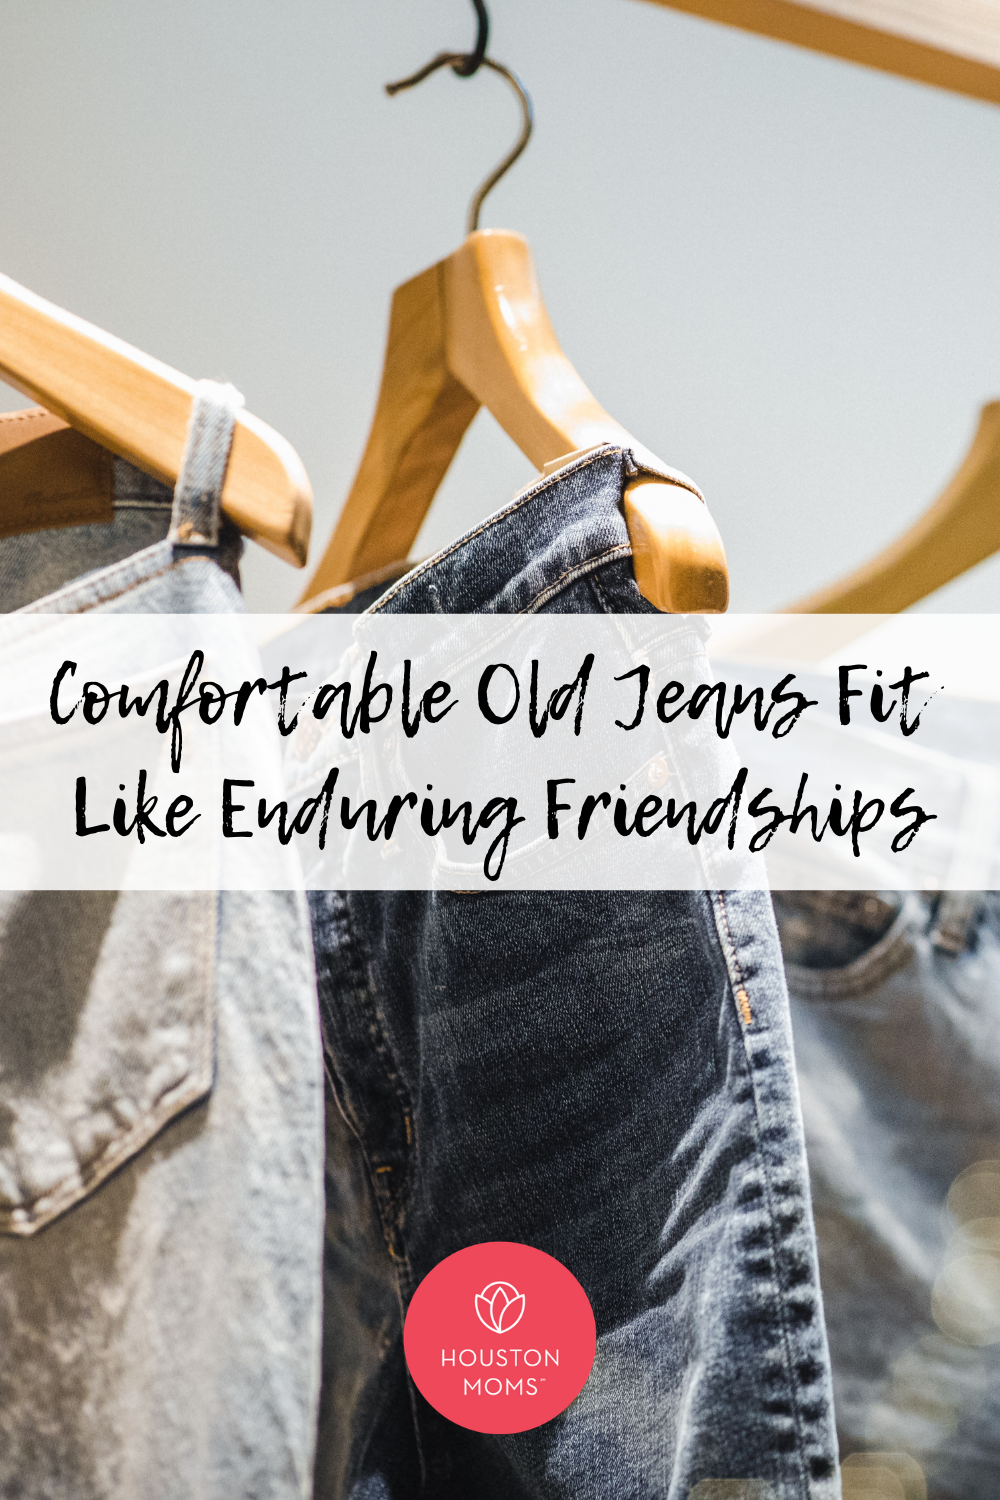 Houston Moms "Comfortable Old Jeans Fit Like Enduring Friendships" #houstonmoms #houstonmomsblog #momsaroundhouston